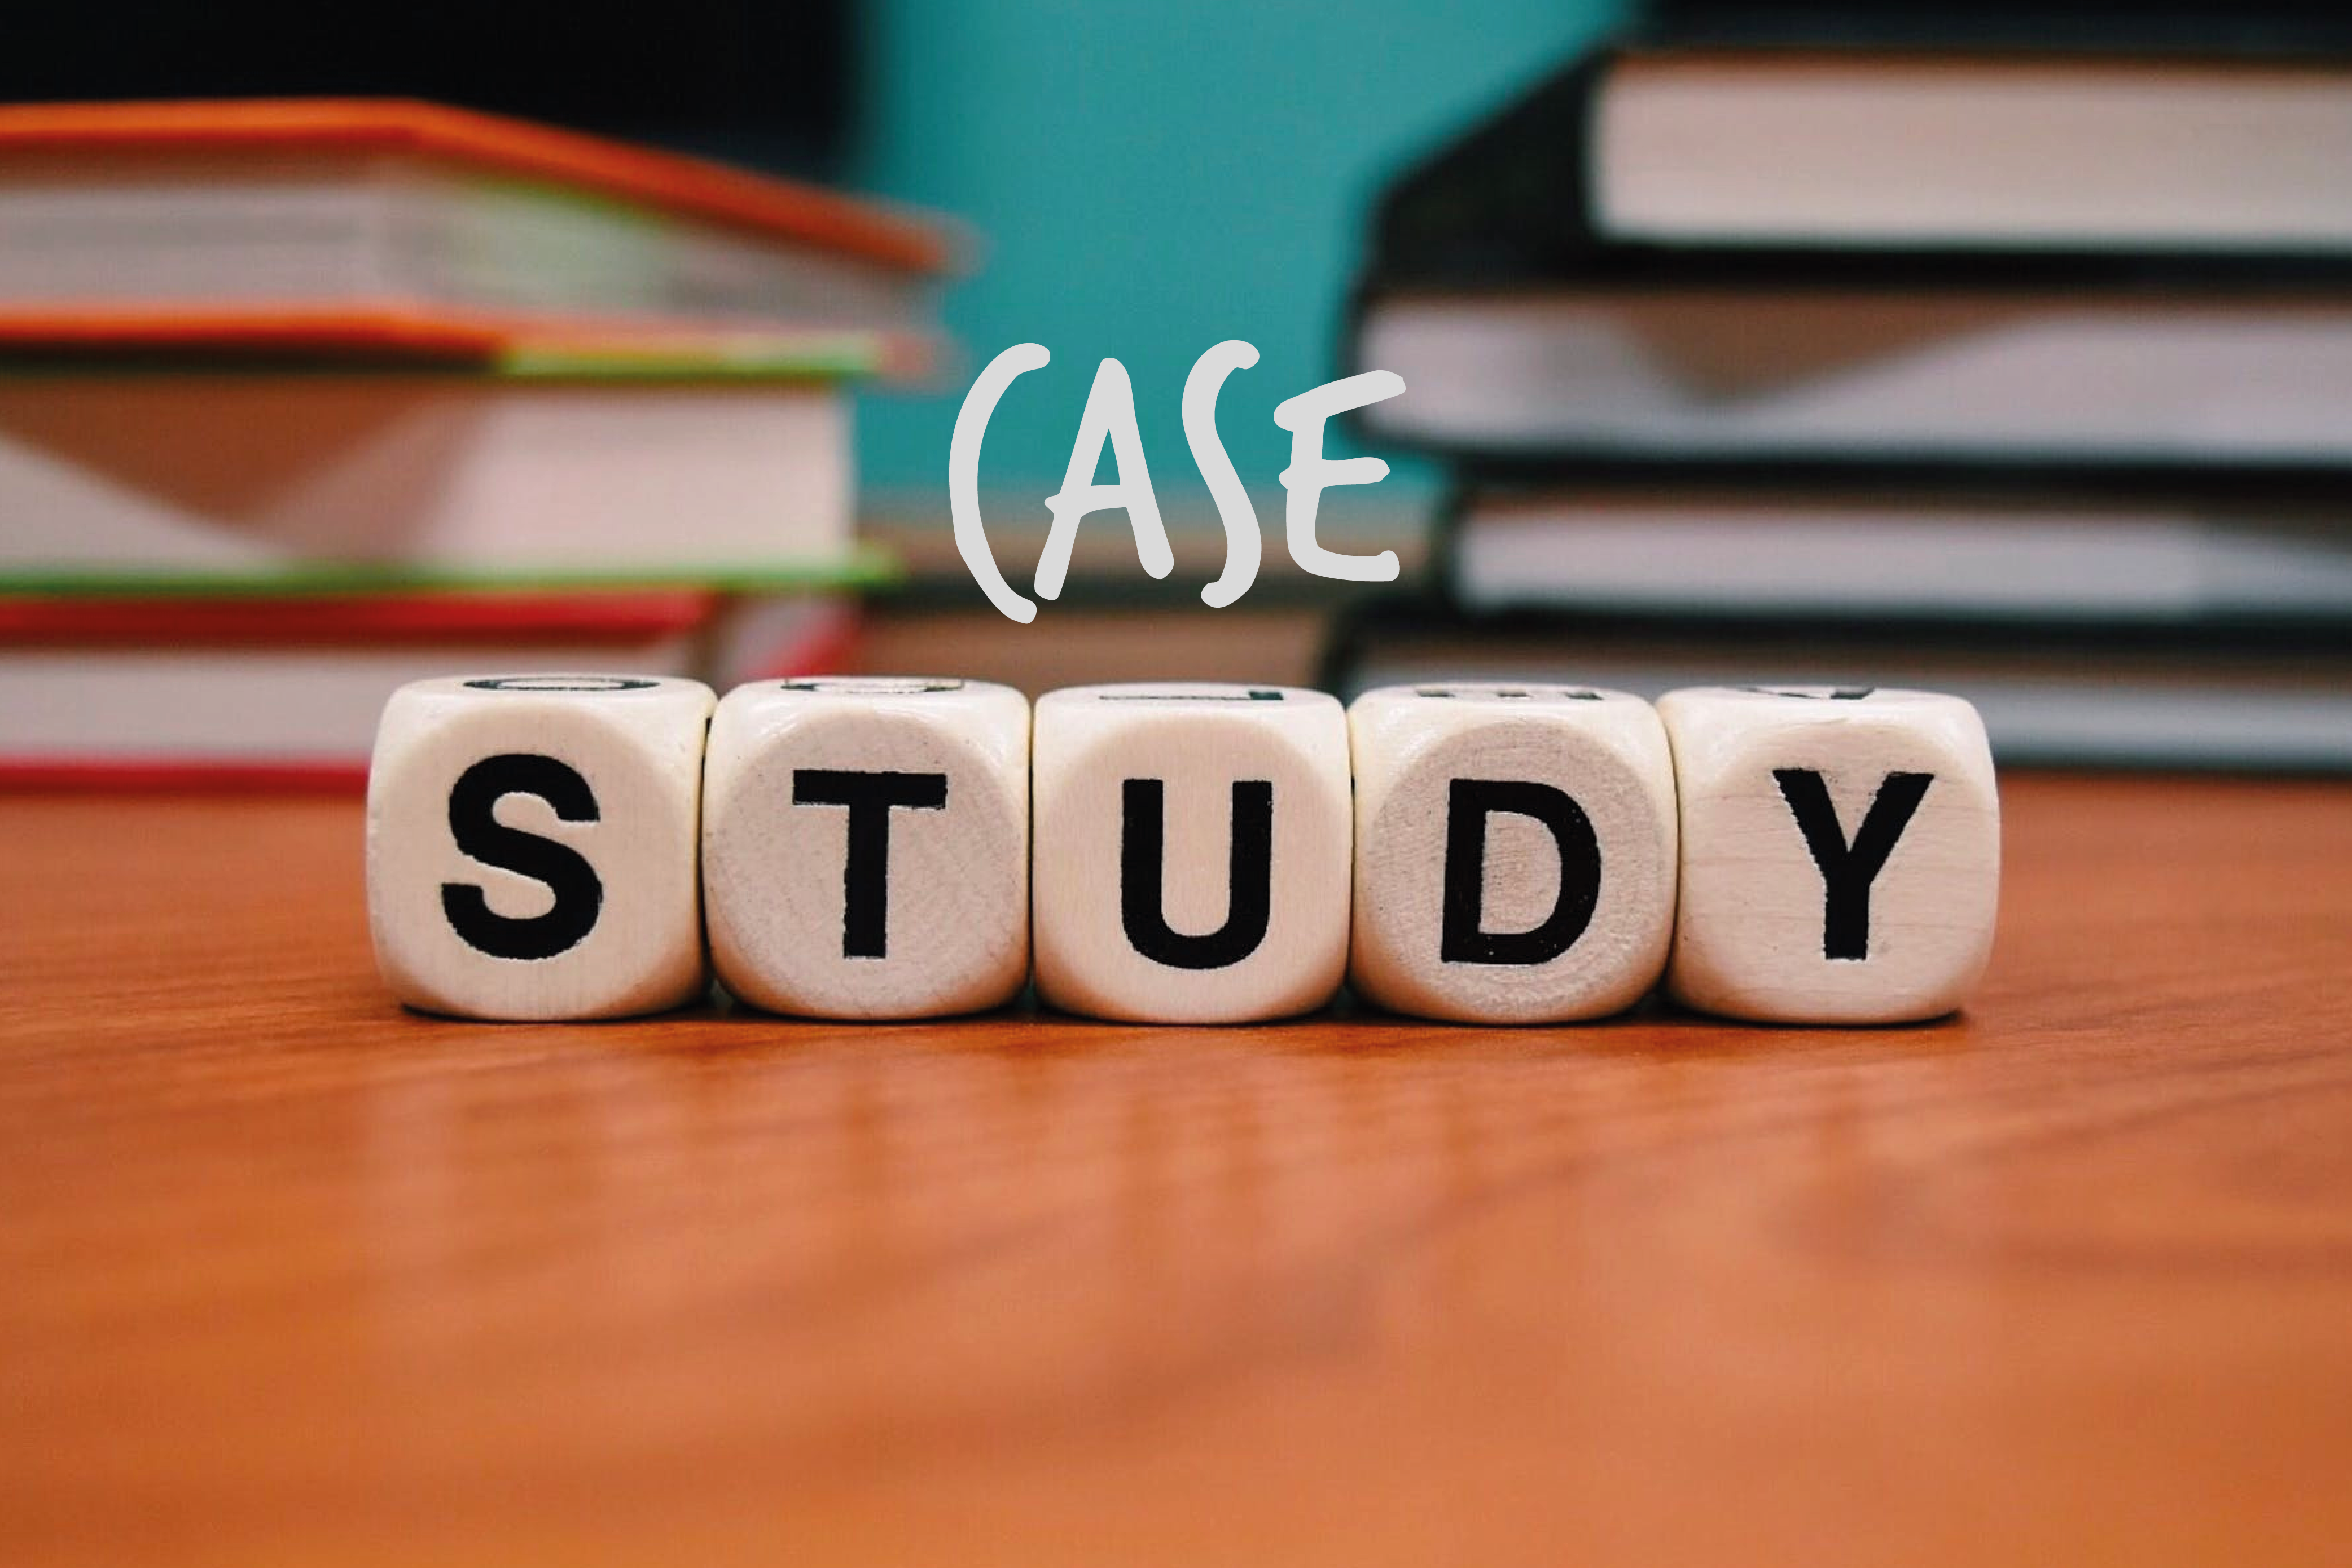 Case-study